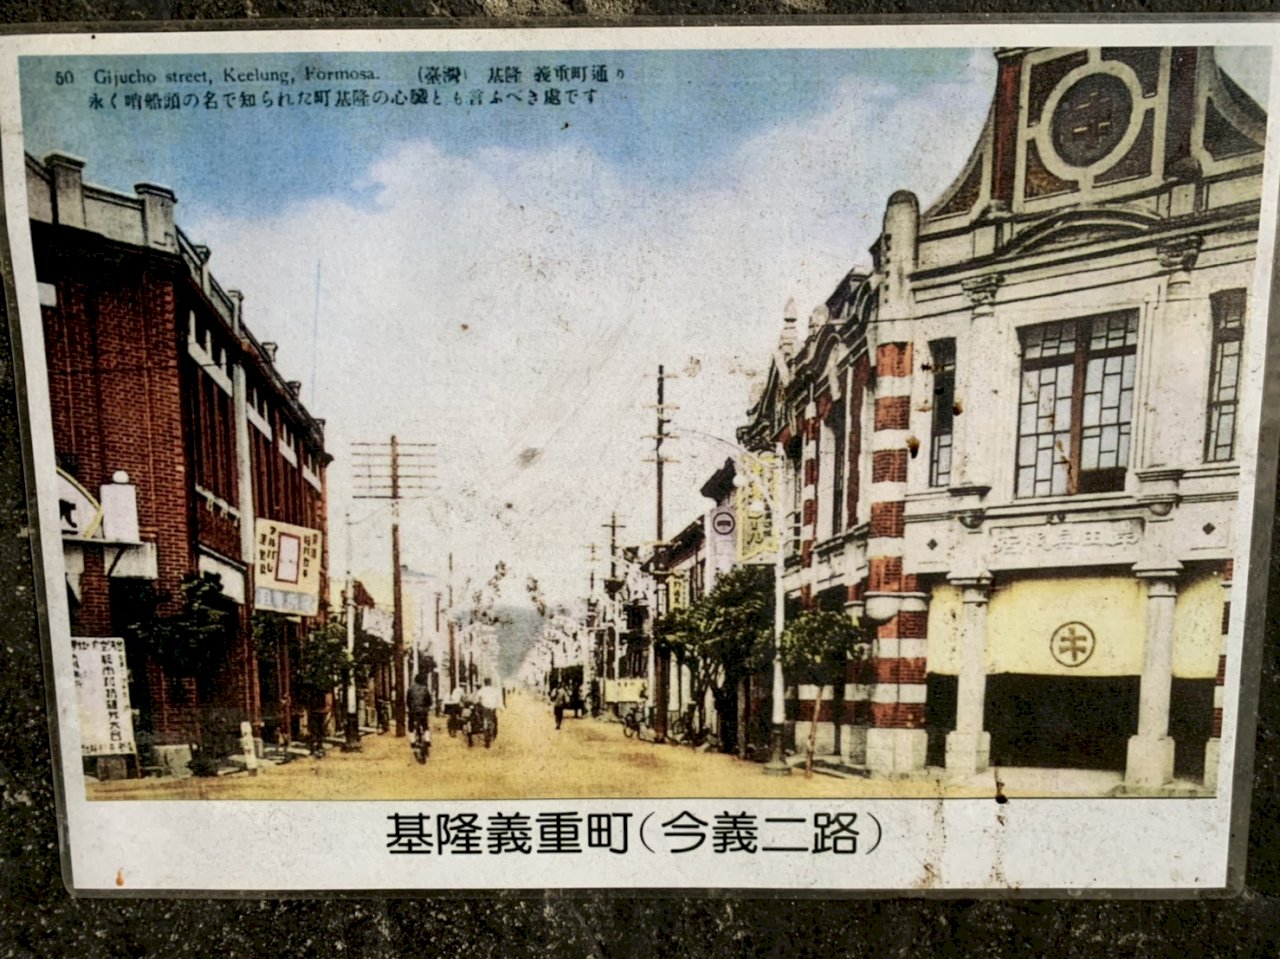 La boutique de kimono de la famille Kishida (à droite, carte postale de l'époque japonaise)